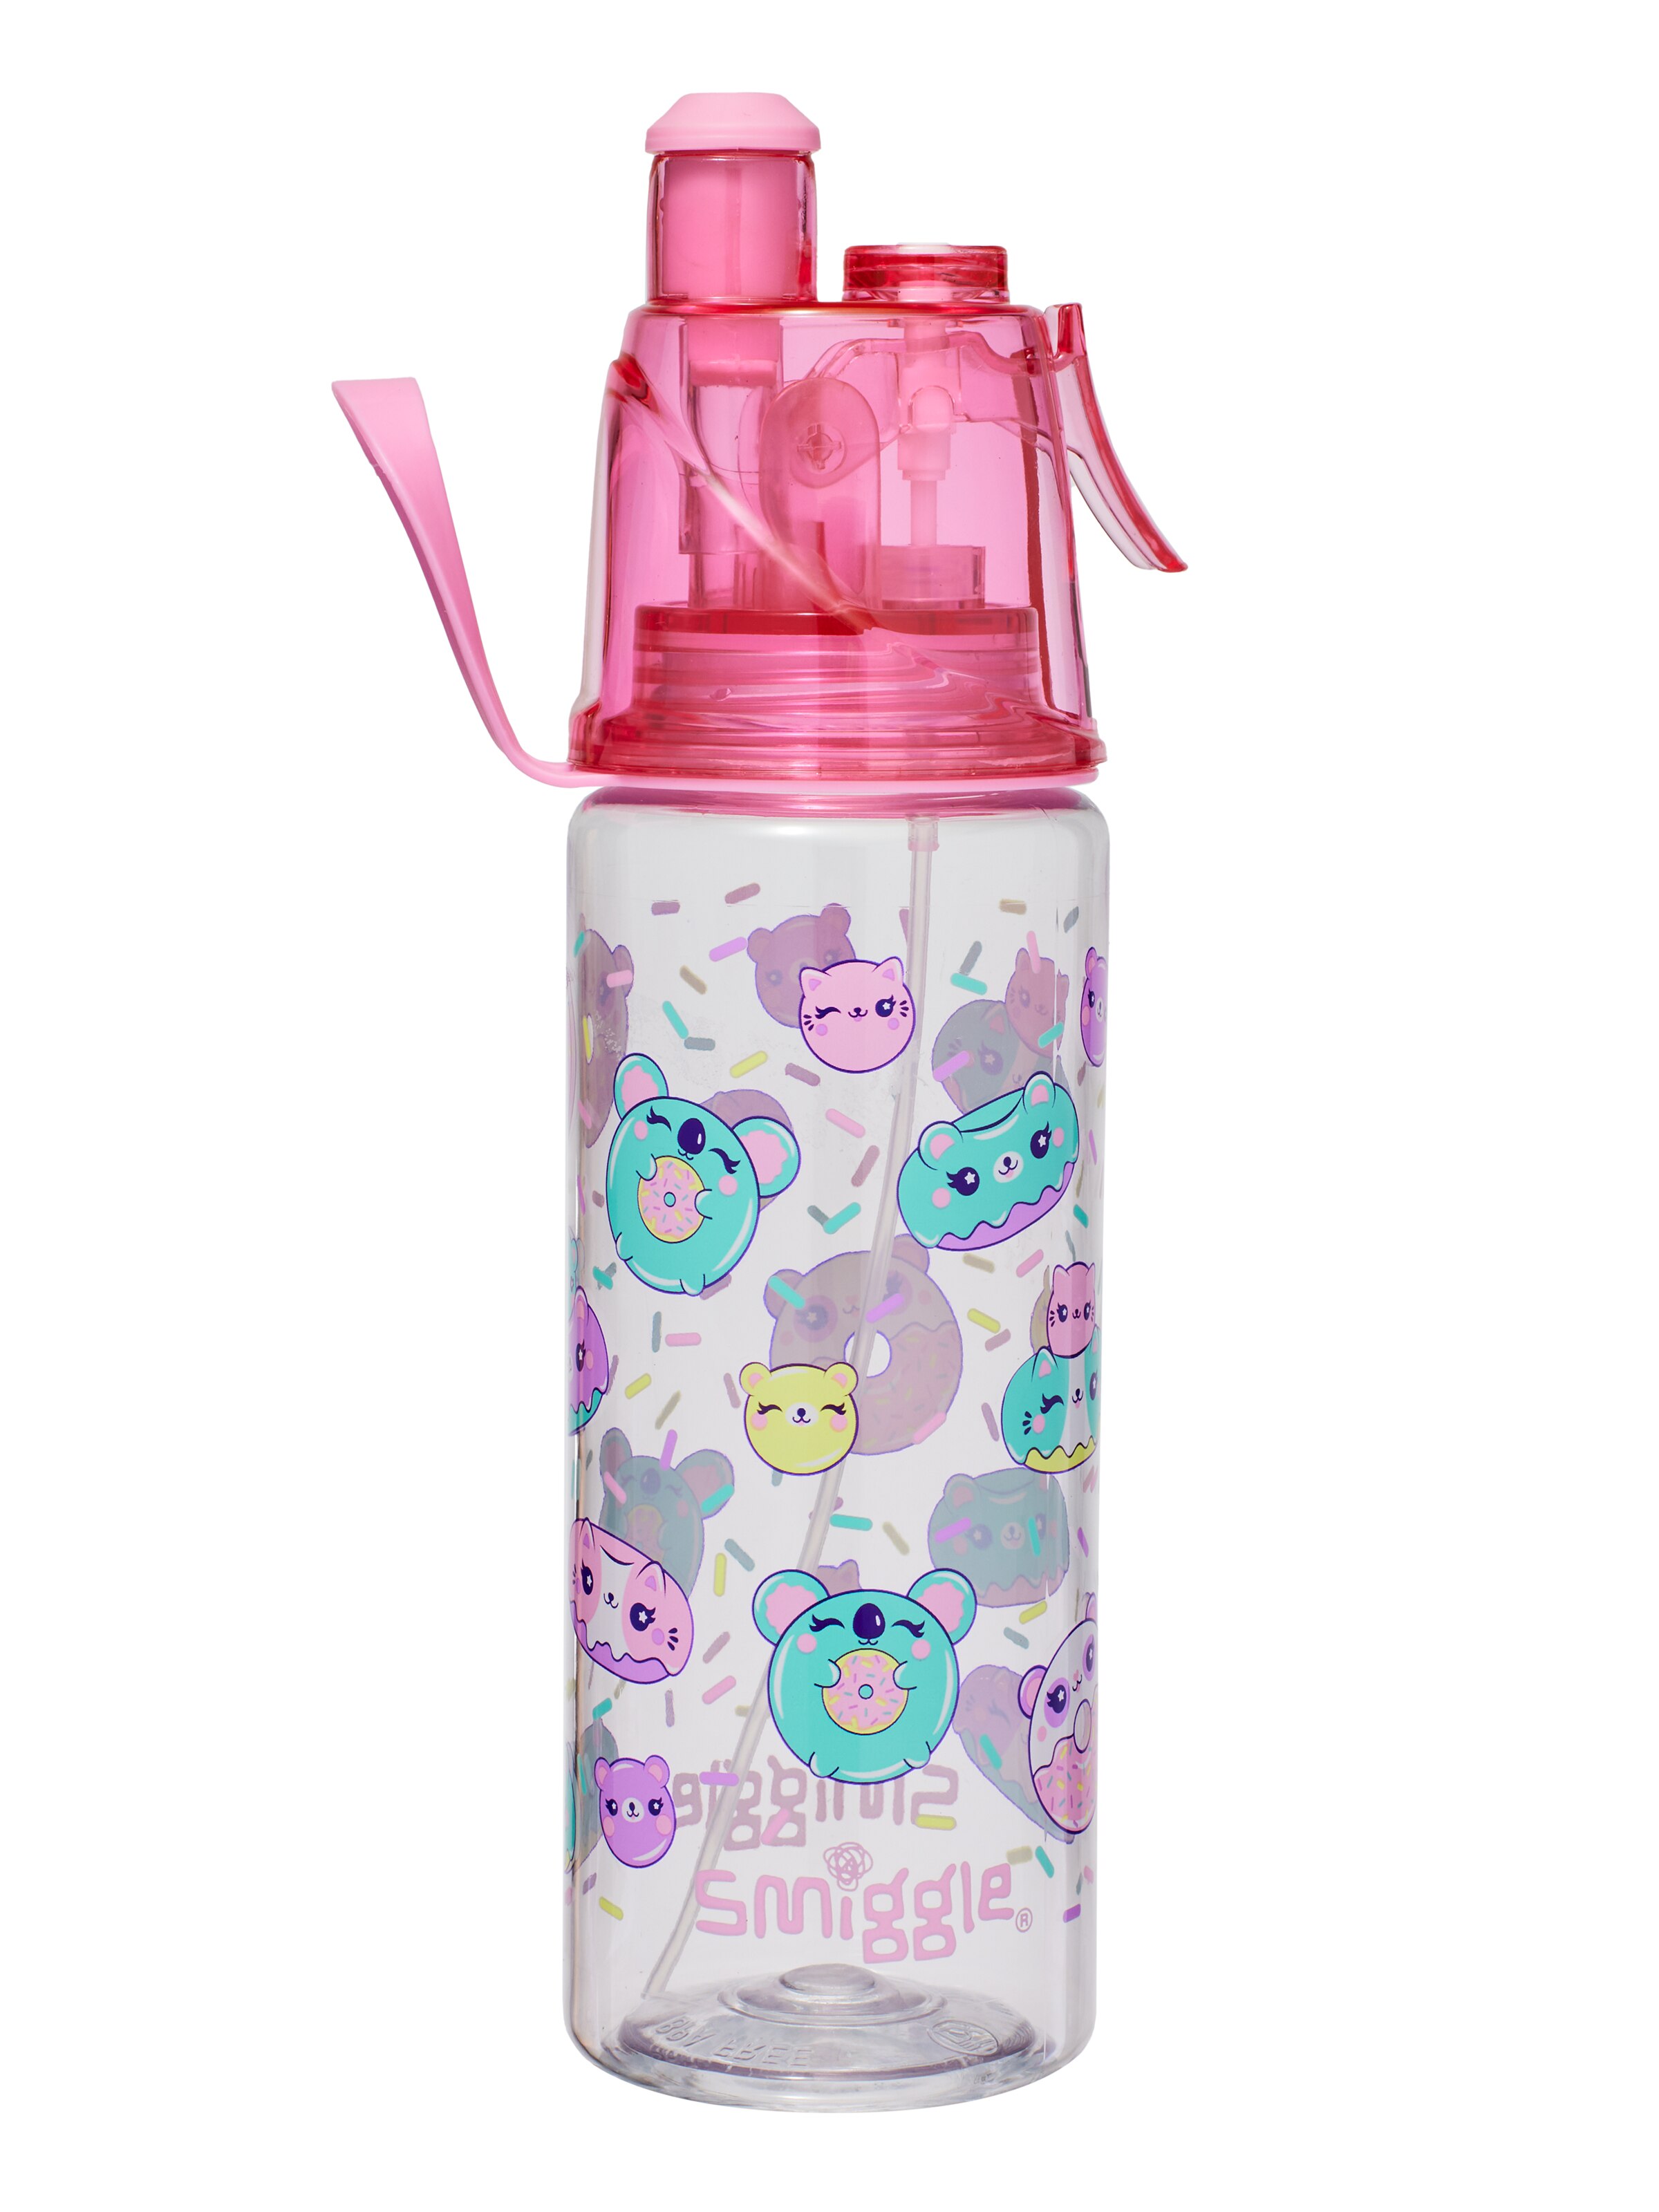 Kids Spritz Drink Bottles - Fun Colours & Designs